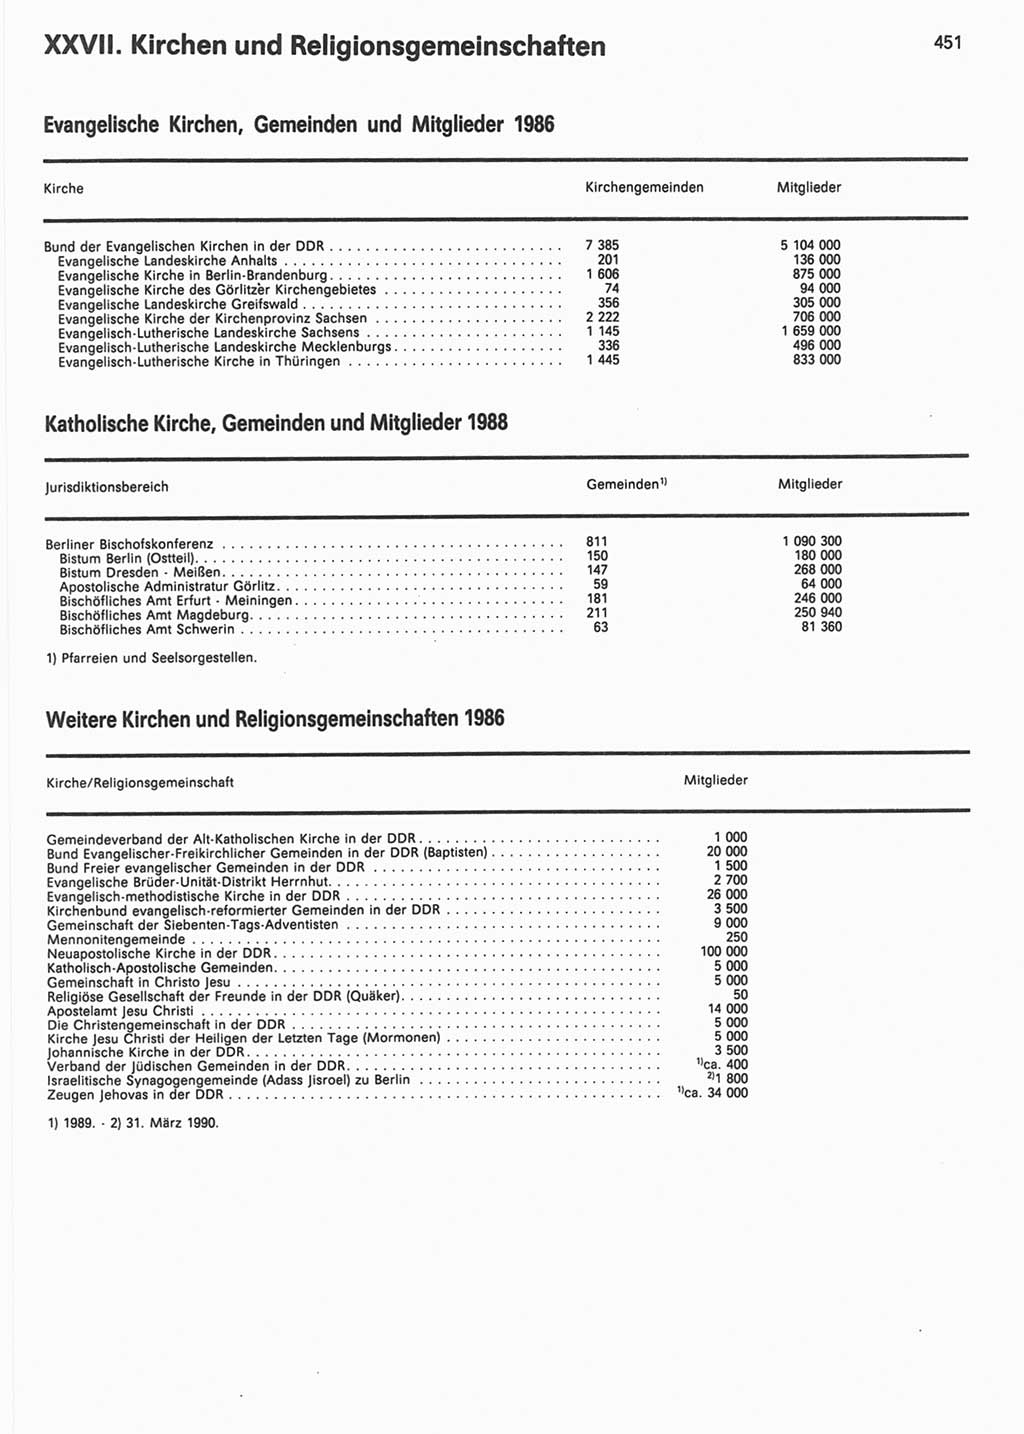 Statistisches Jahrbuch der Deutschen Demokratischen Republik (DDR) 1990, Seite 451 (Stat. Jb. DDR 1990, S. 451)